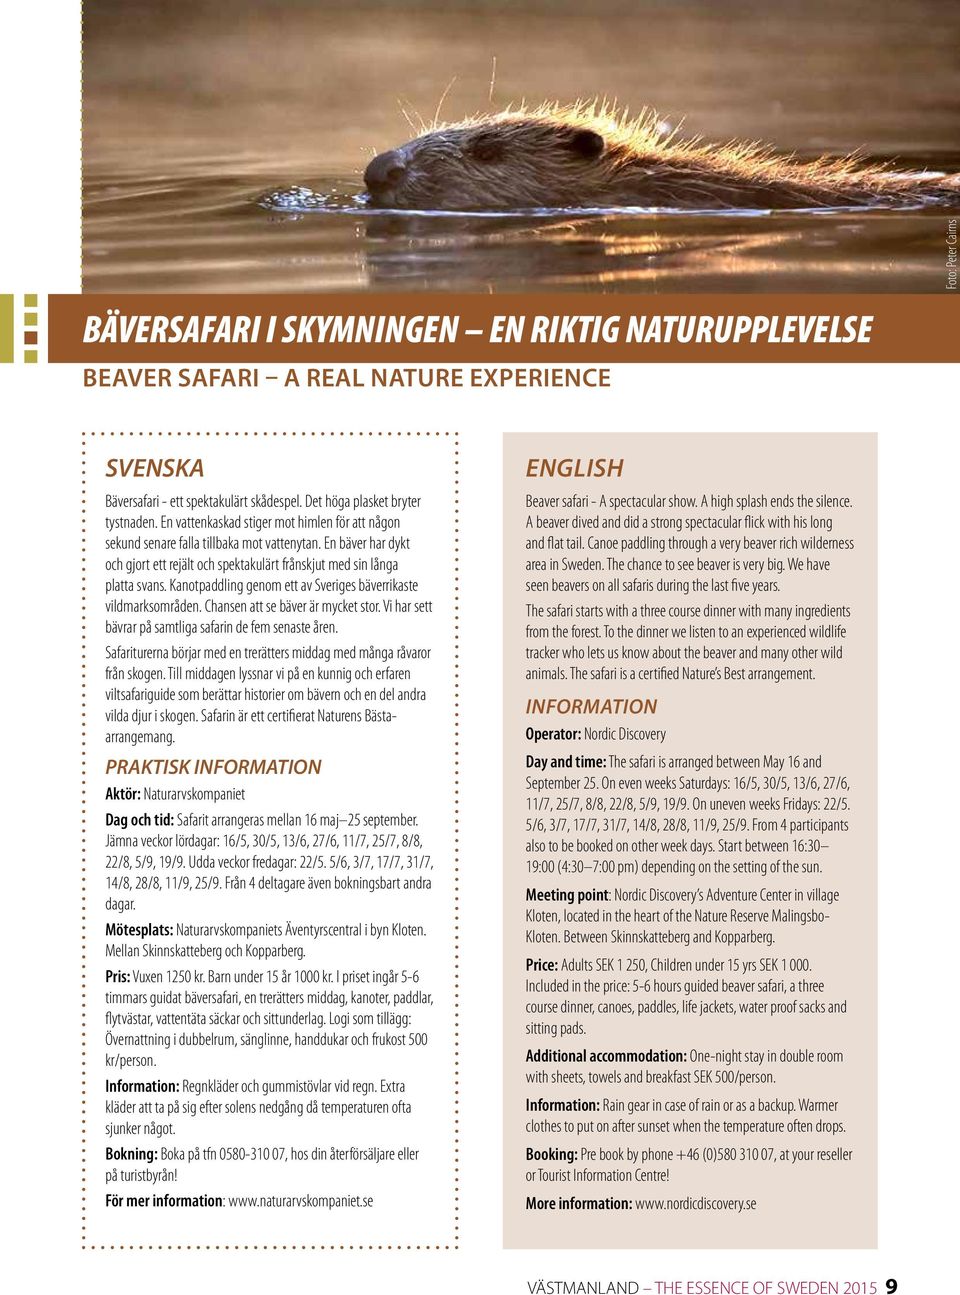 Kanotpaddling genom ett av Sveriges bäverrikaste vildmarksområden. Chansen att se bäver är mycket stor. Vi har sett bävrar på samtliga safarin de fem senaste åren.